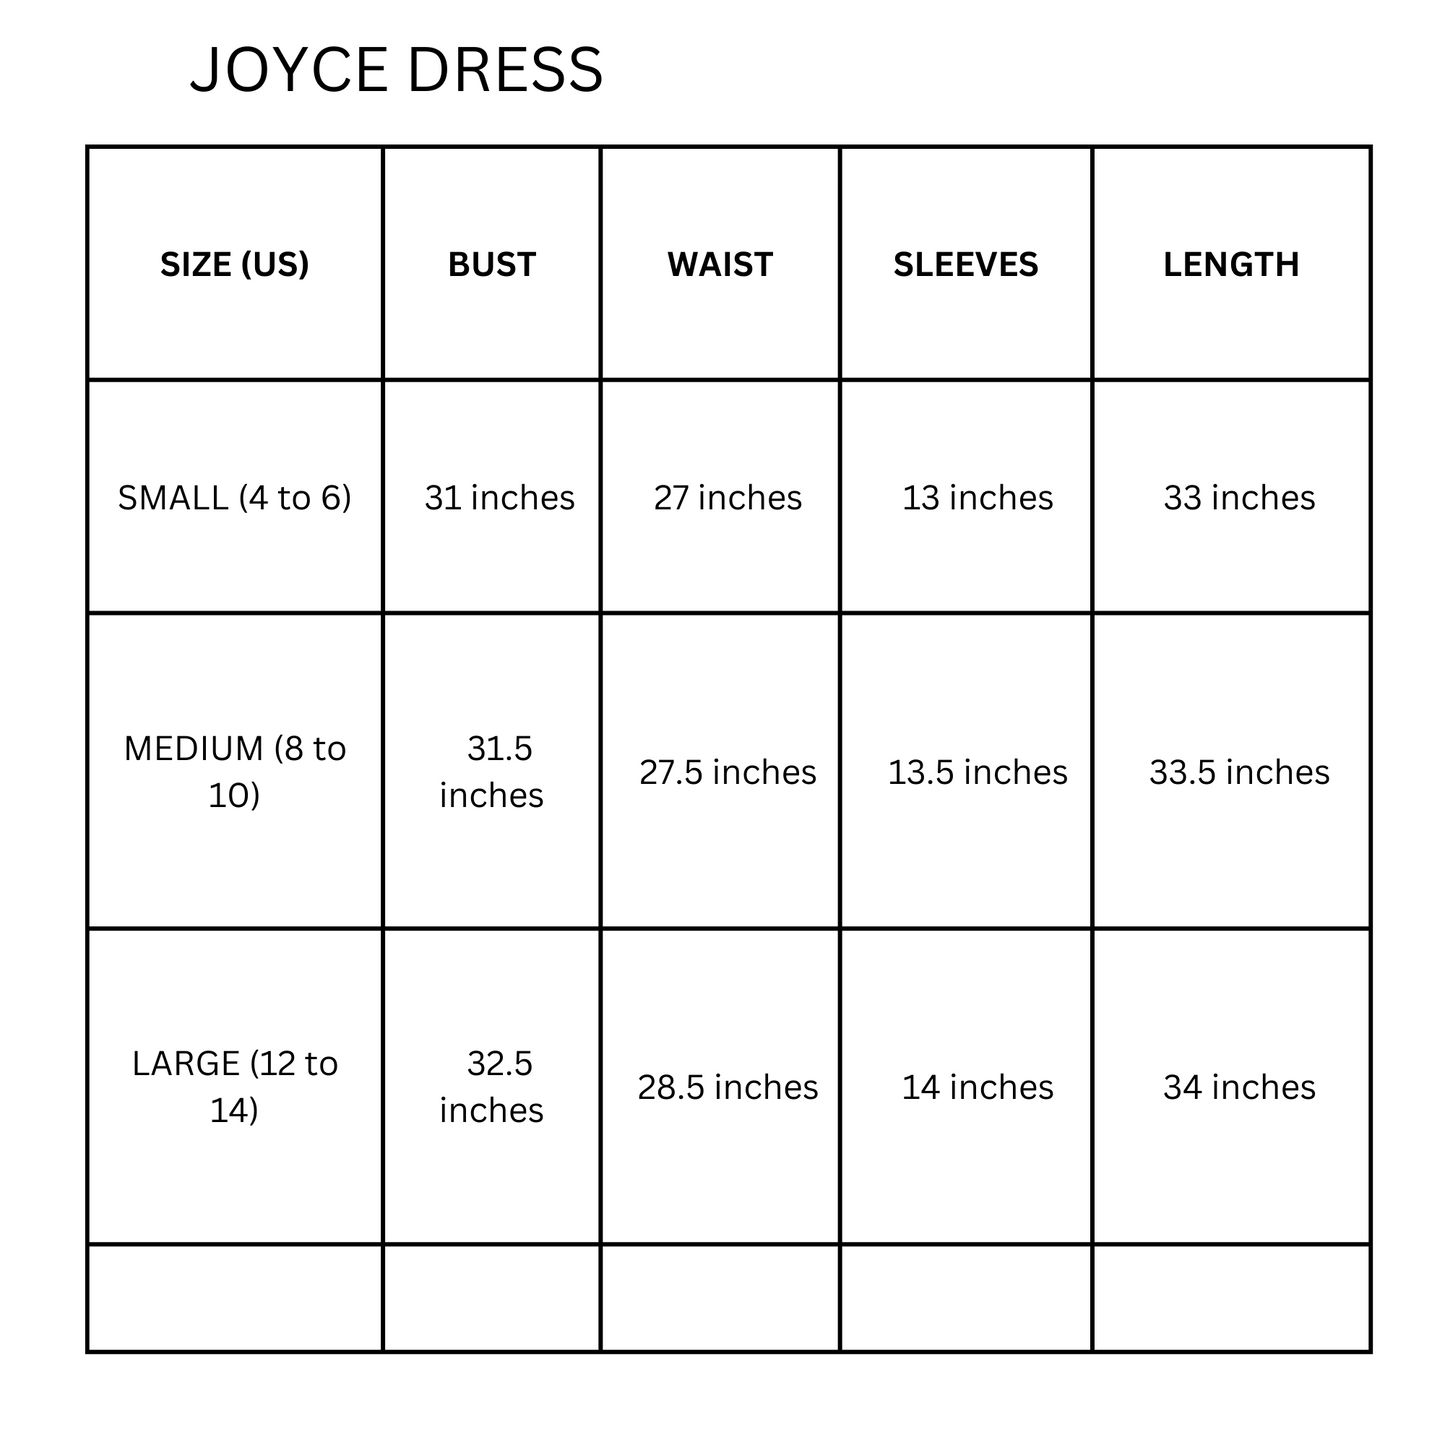 Joyce Dress off shoulder black printed